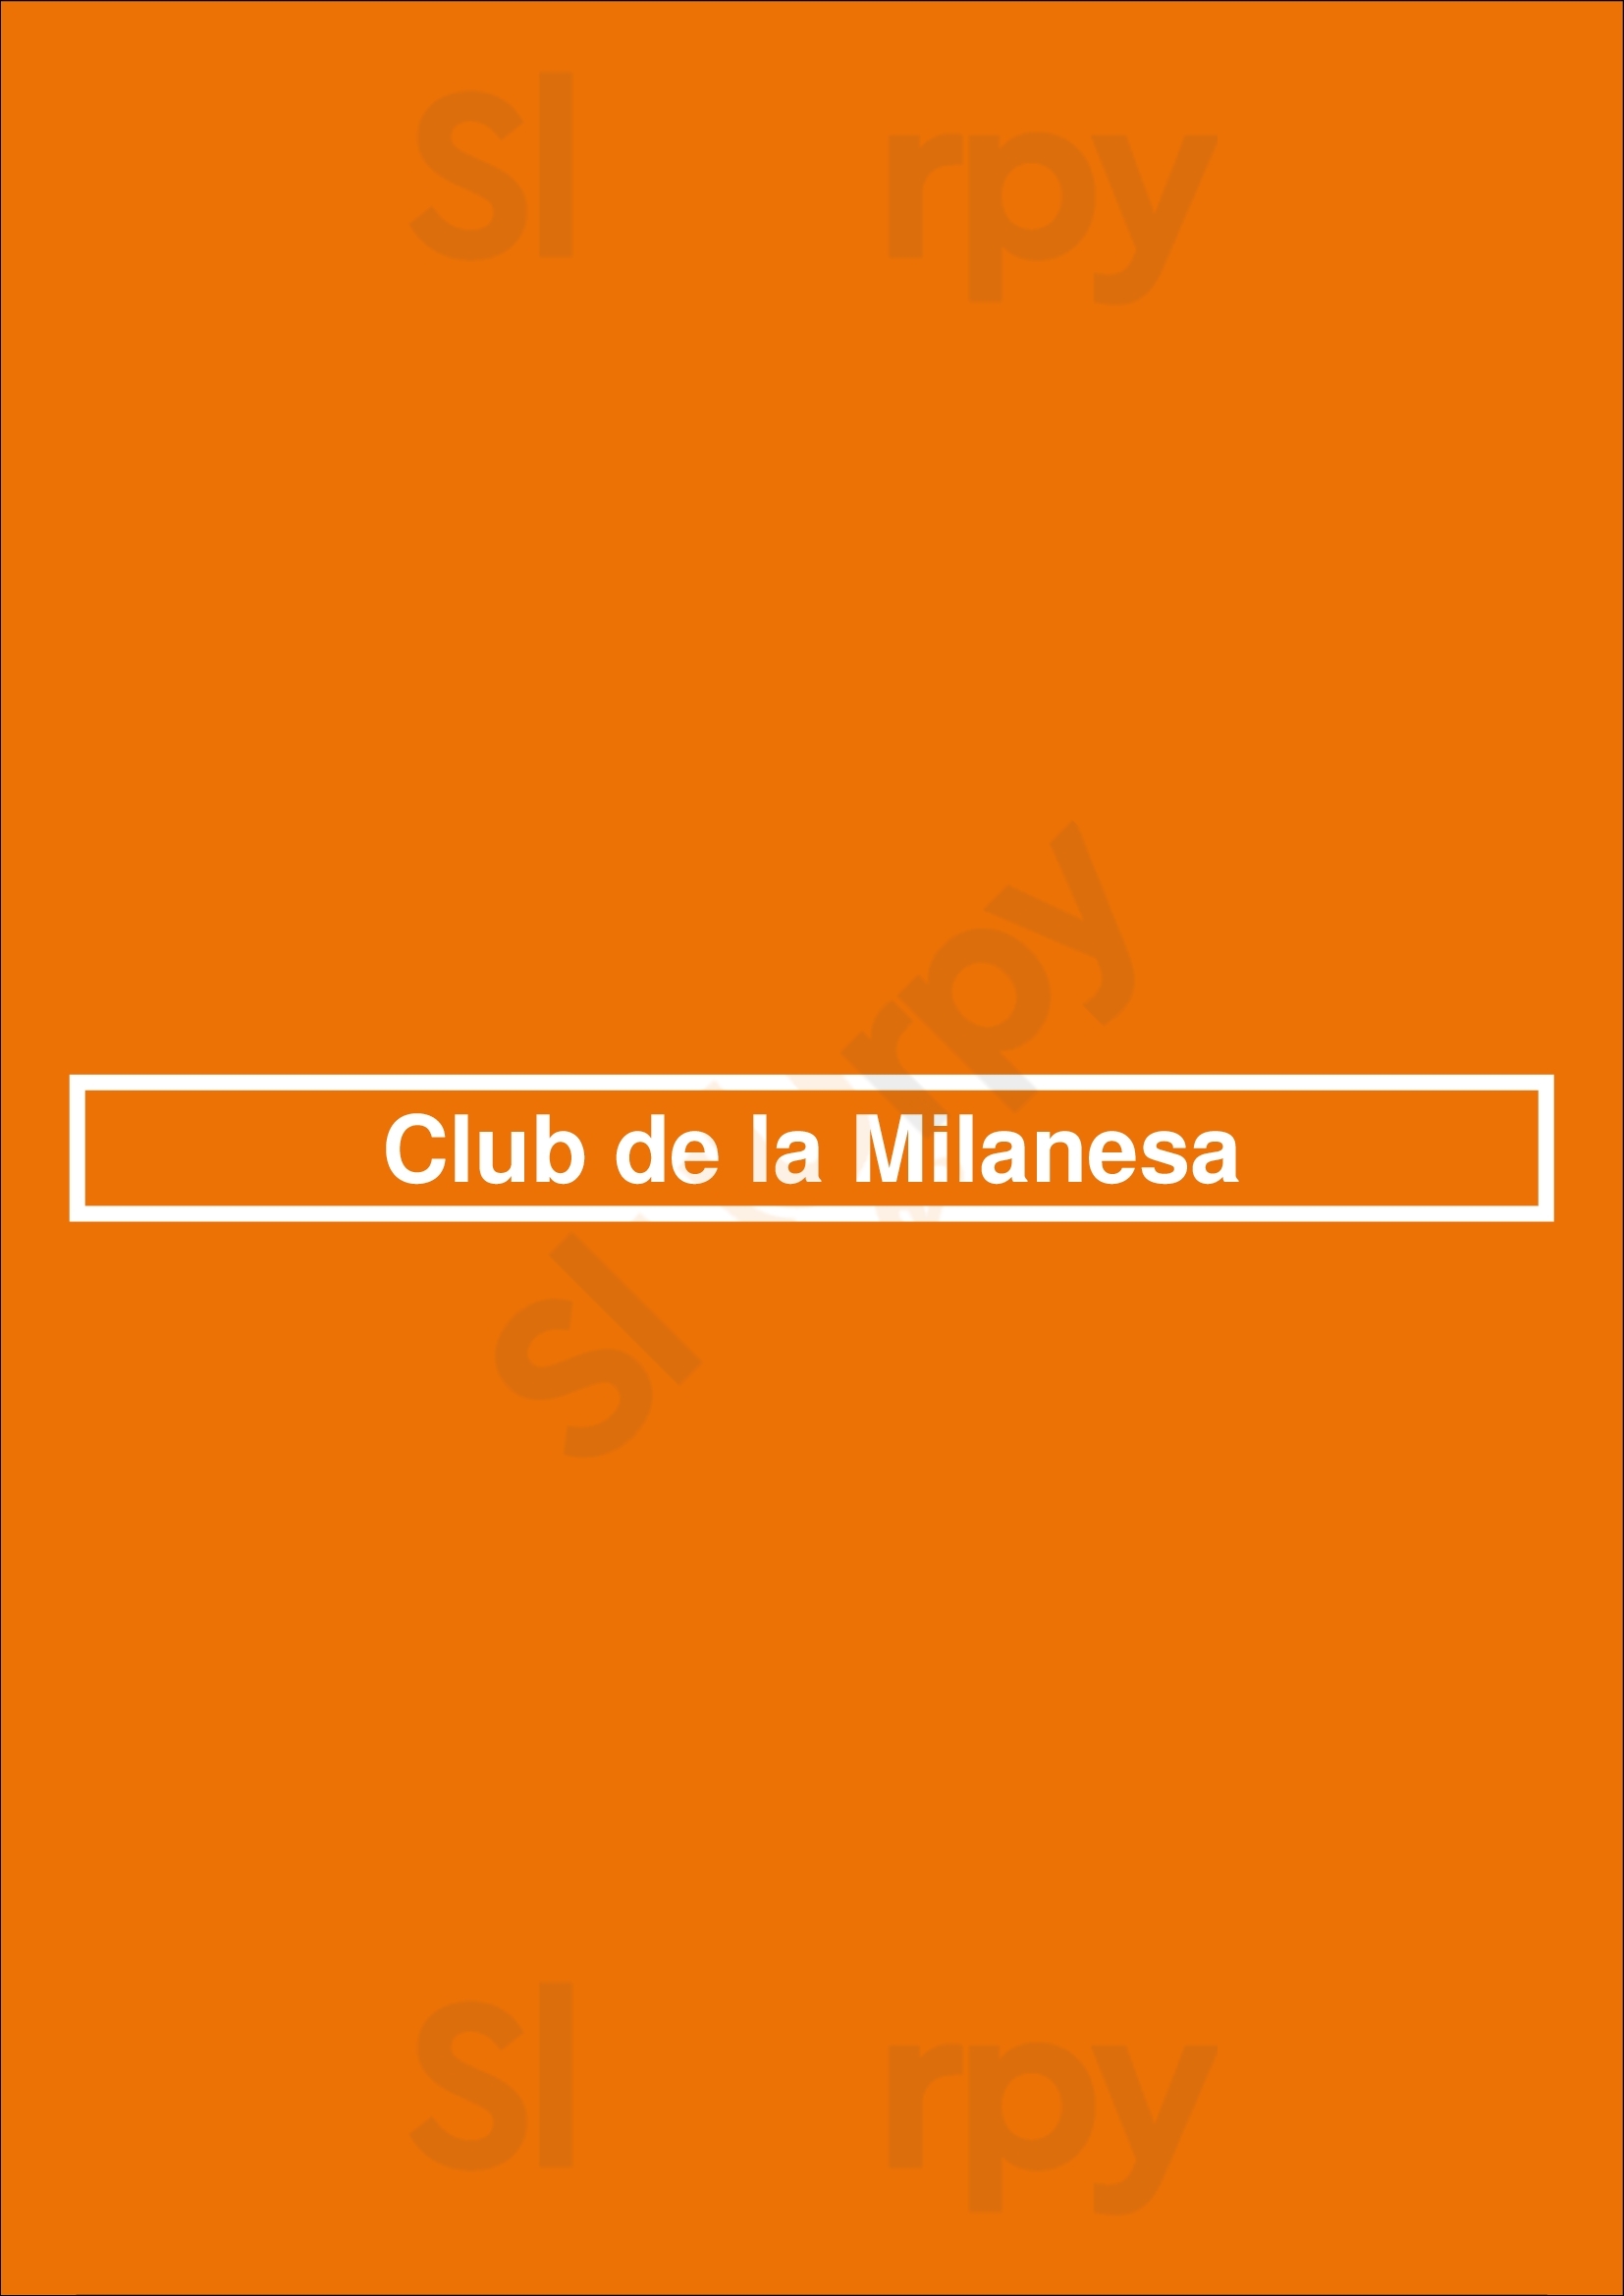 Club De La Milanesa Buenos Aires Menu - 1